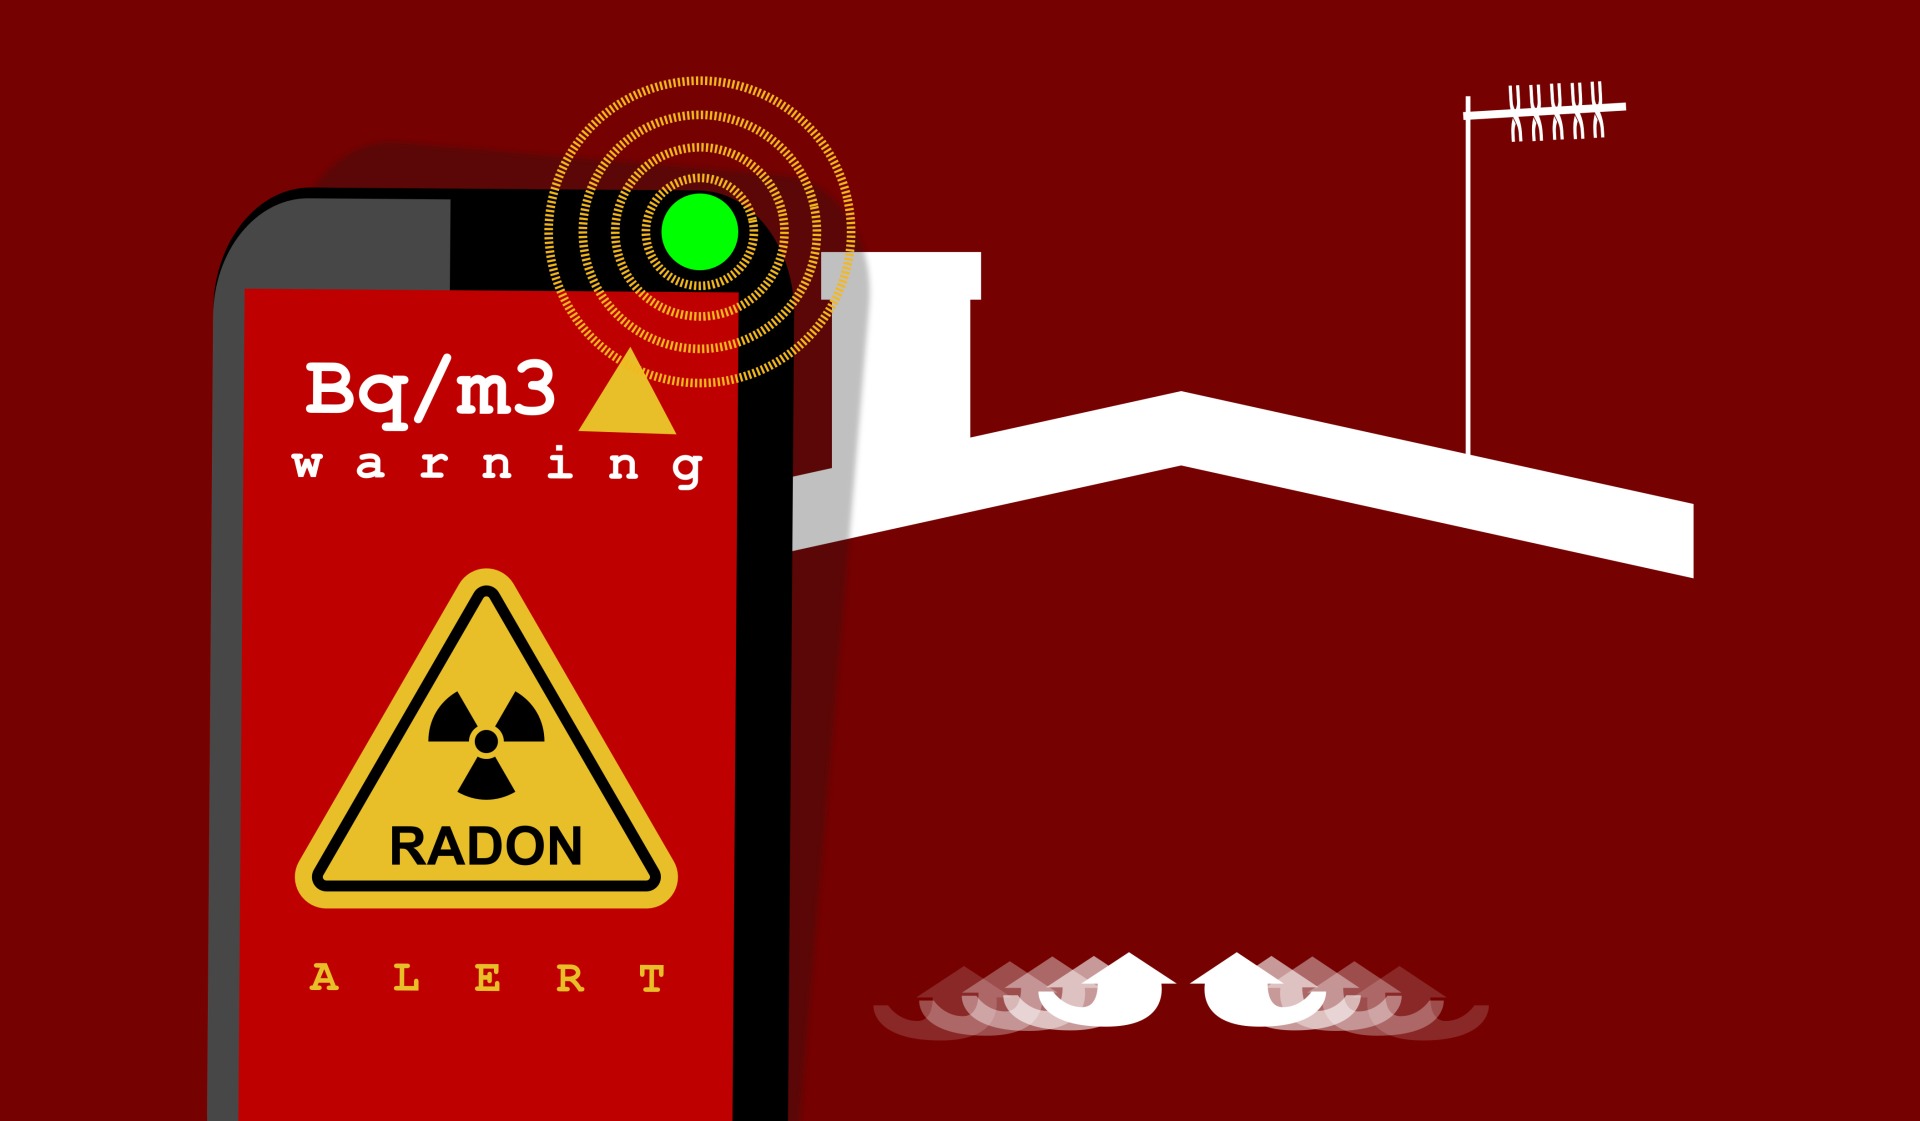 När ska jag göra en radonmätning och varför?